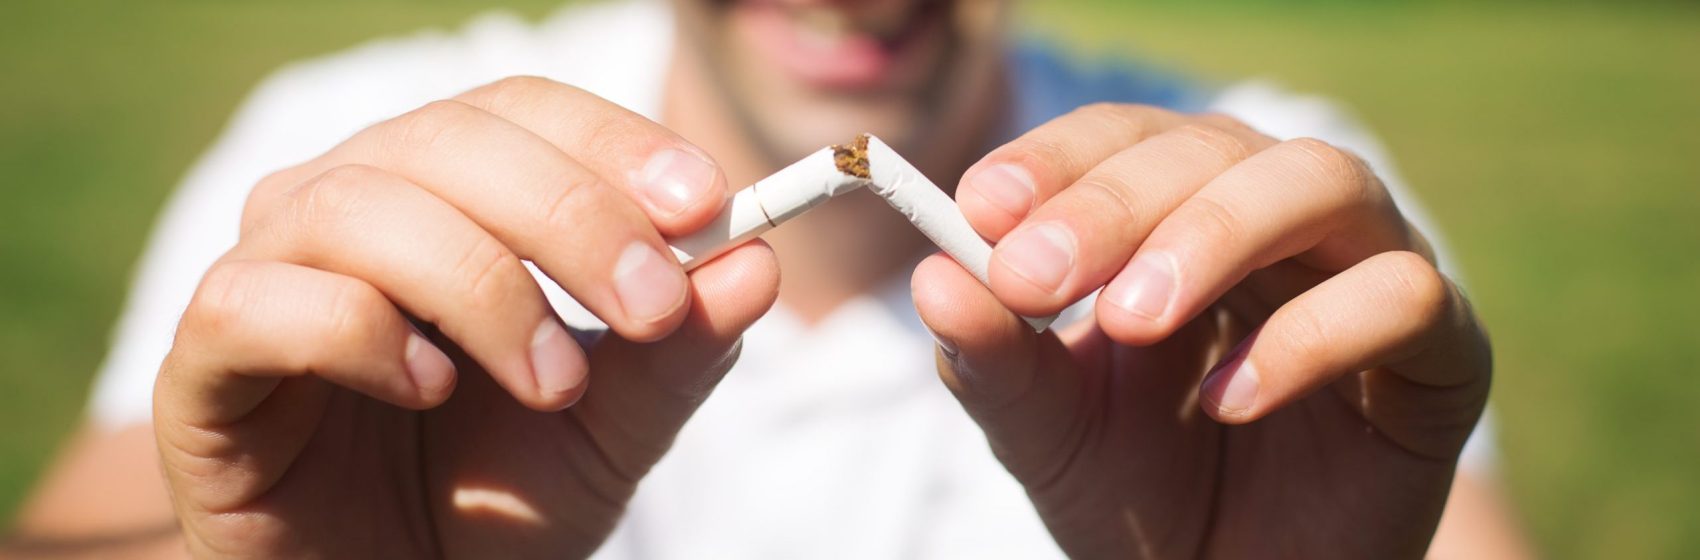 31/05 – Journée mondiale sans tabac<br> Se défaire du tabagisme, un luxe ?